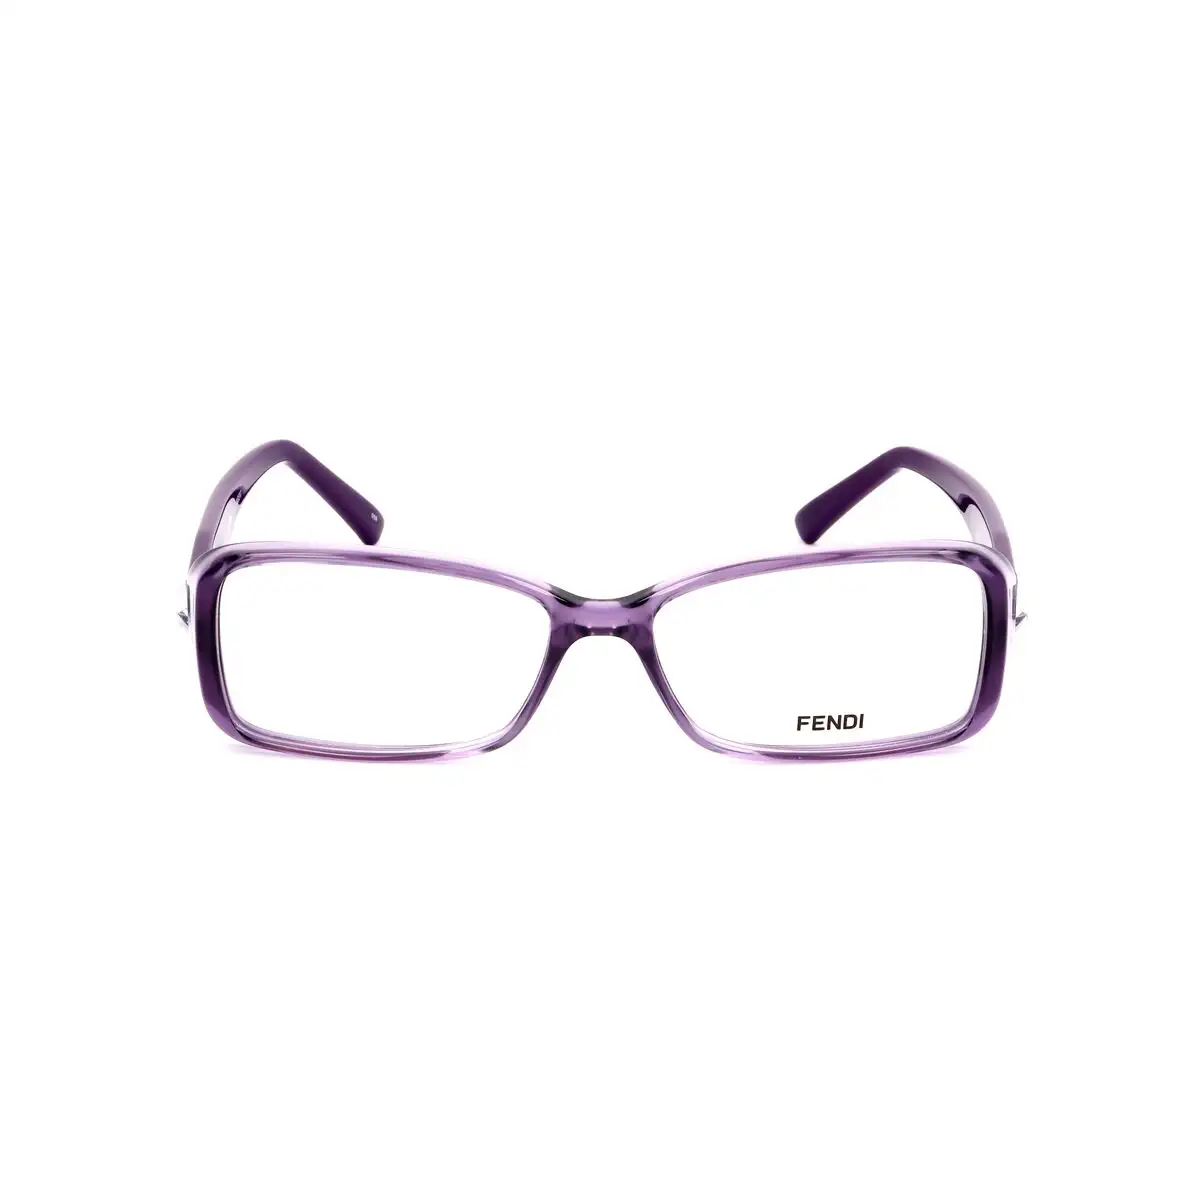 Monture de lunettes femme fendi fendi 896 531 violet_9630. DIAYTAR SENEGAL - Votre Pass vers la Découverte. Explorez notre boutique en ligne et plongez dans un voyage à travers des produits authentiques et contemporains, tous réunis sous un même toit.